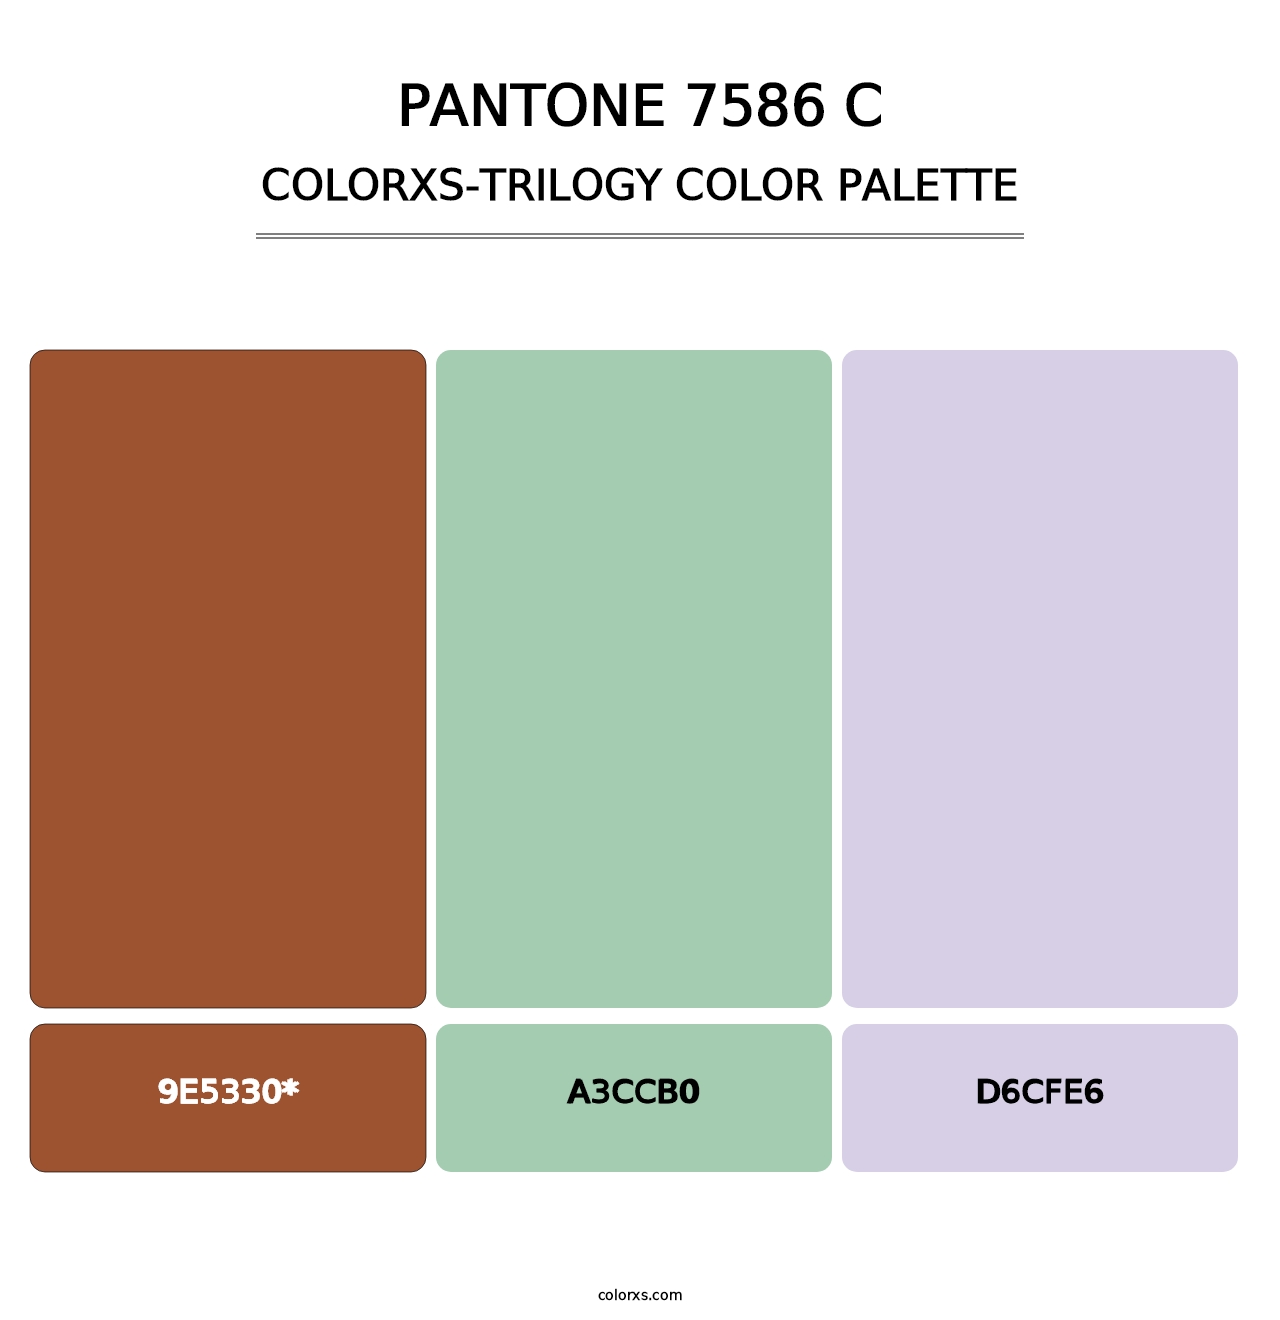 PANTONE 7586 C - Colorxs Trilogy Palette